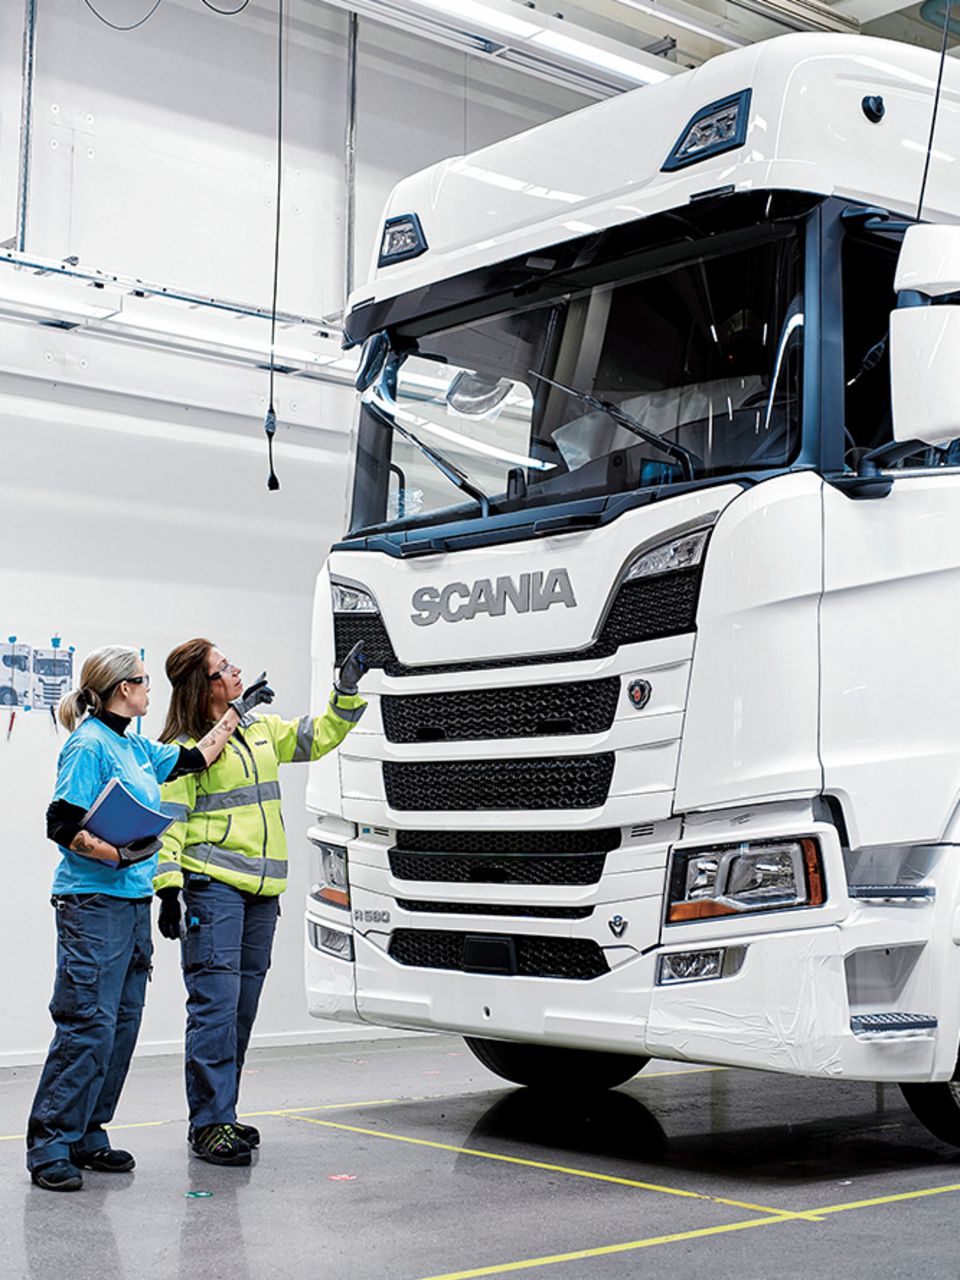 Nach dem Byggladan-Prinzip von Scania kann für jeden Einsatzzweck das passende Fahrzeug gebaut werden, und zwar unabhängig von der Stückzahl.